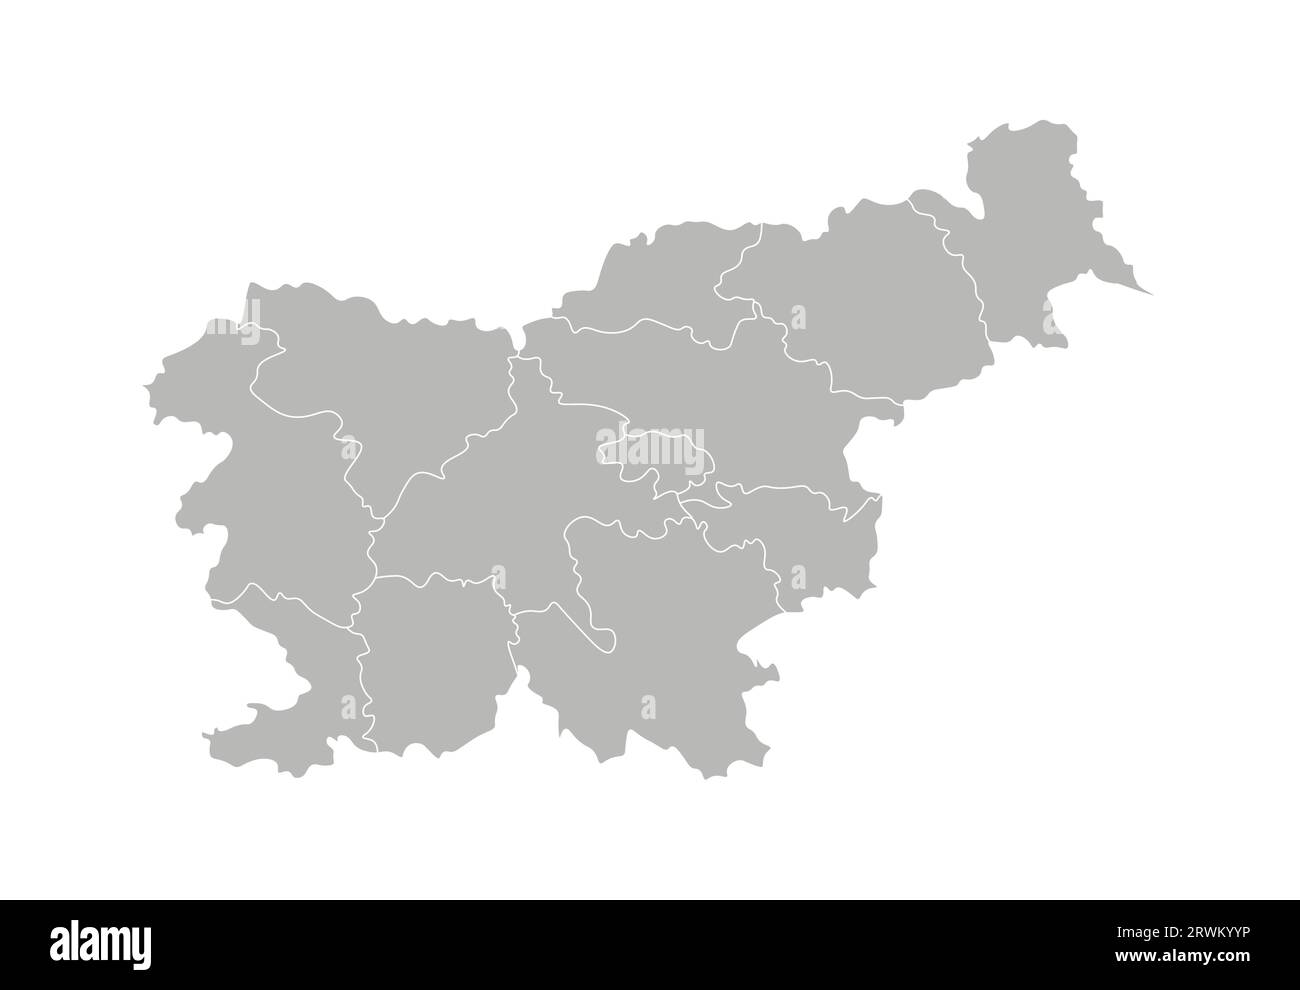 Vektorisolierte Darstellung der vereinfachten Verwaltungskarte Sloweniens. Grenzen der Provinzen (Regionen). Graue Silhouetten. Weiße Umrandung. Stock Vektor